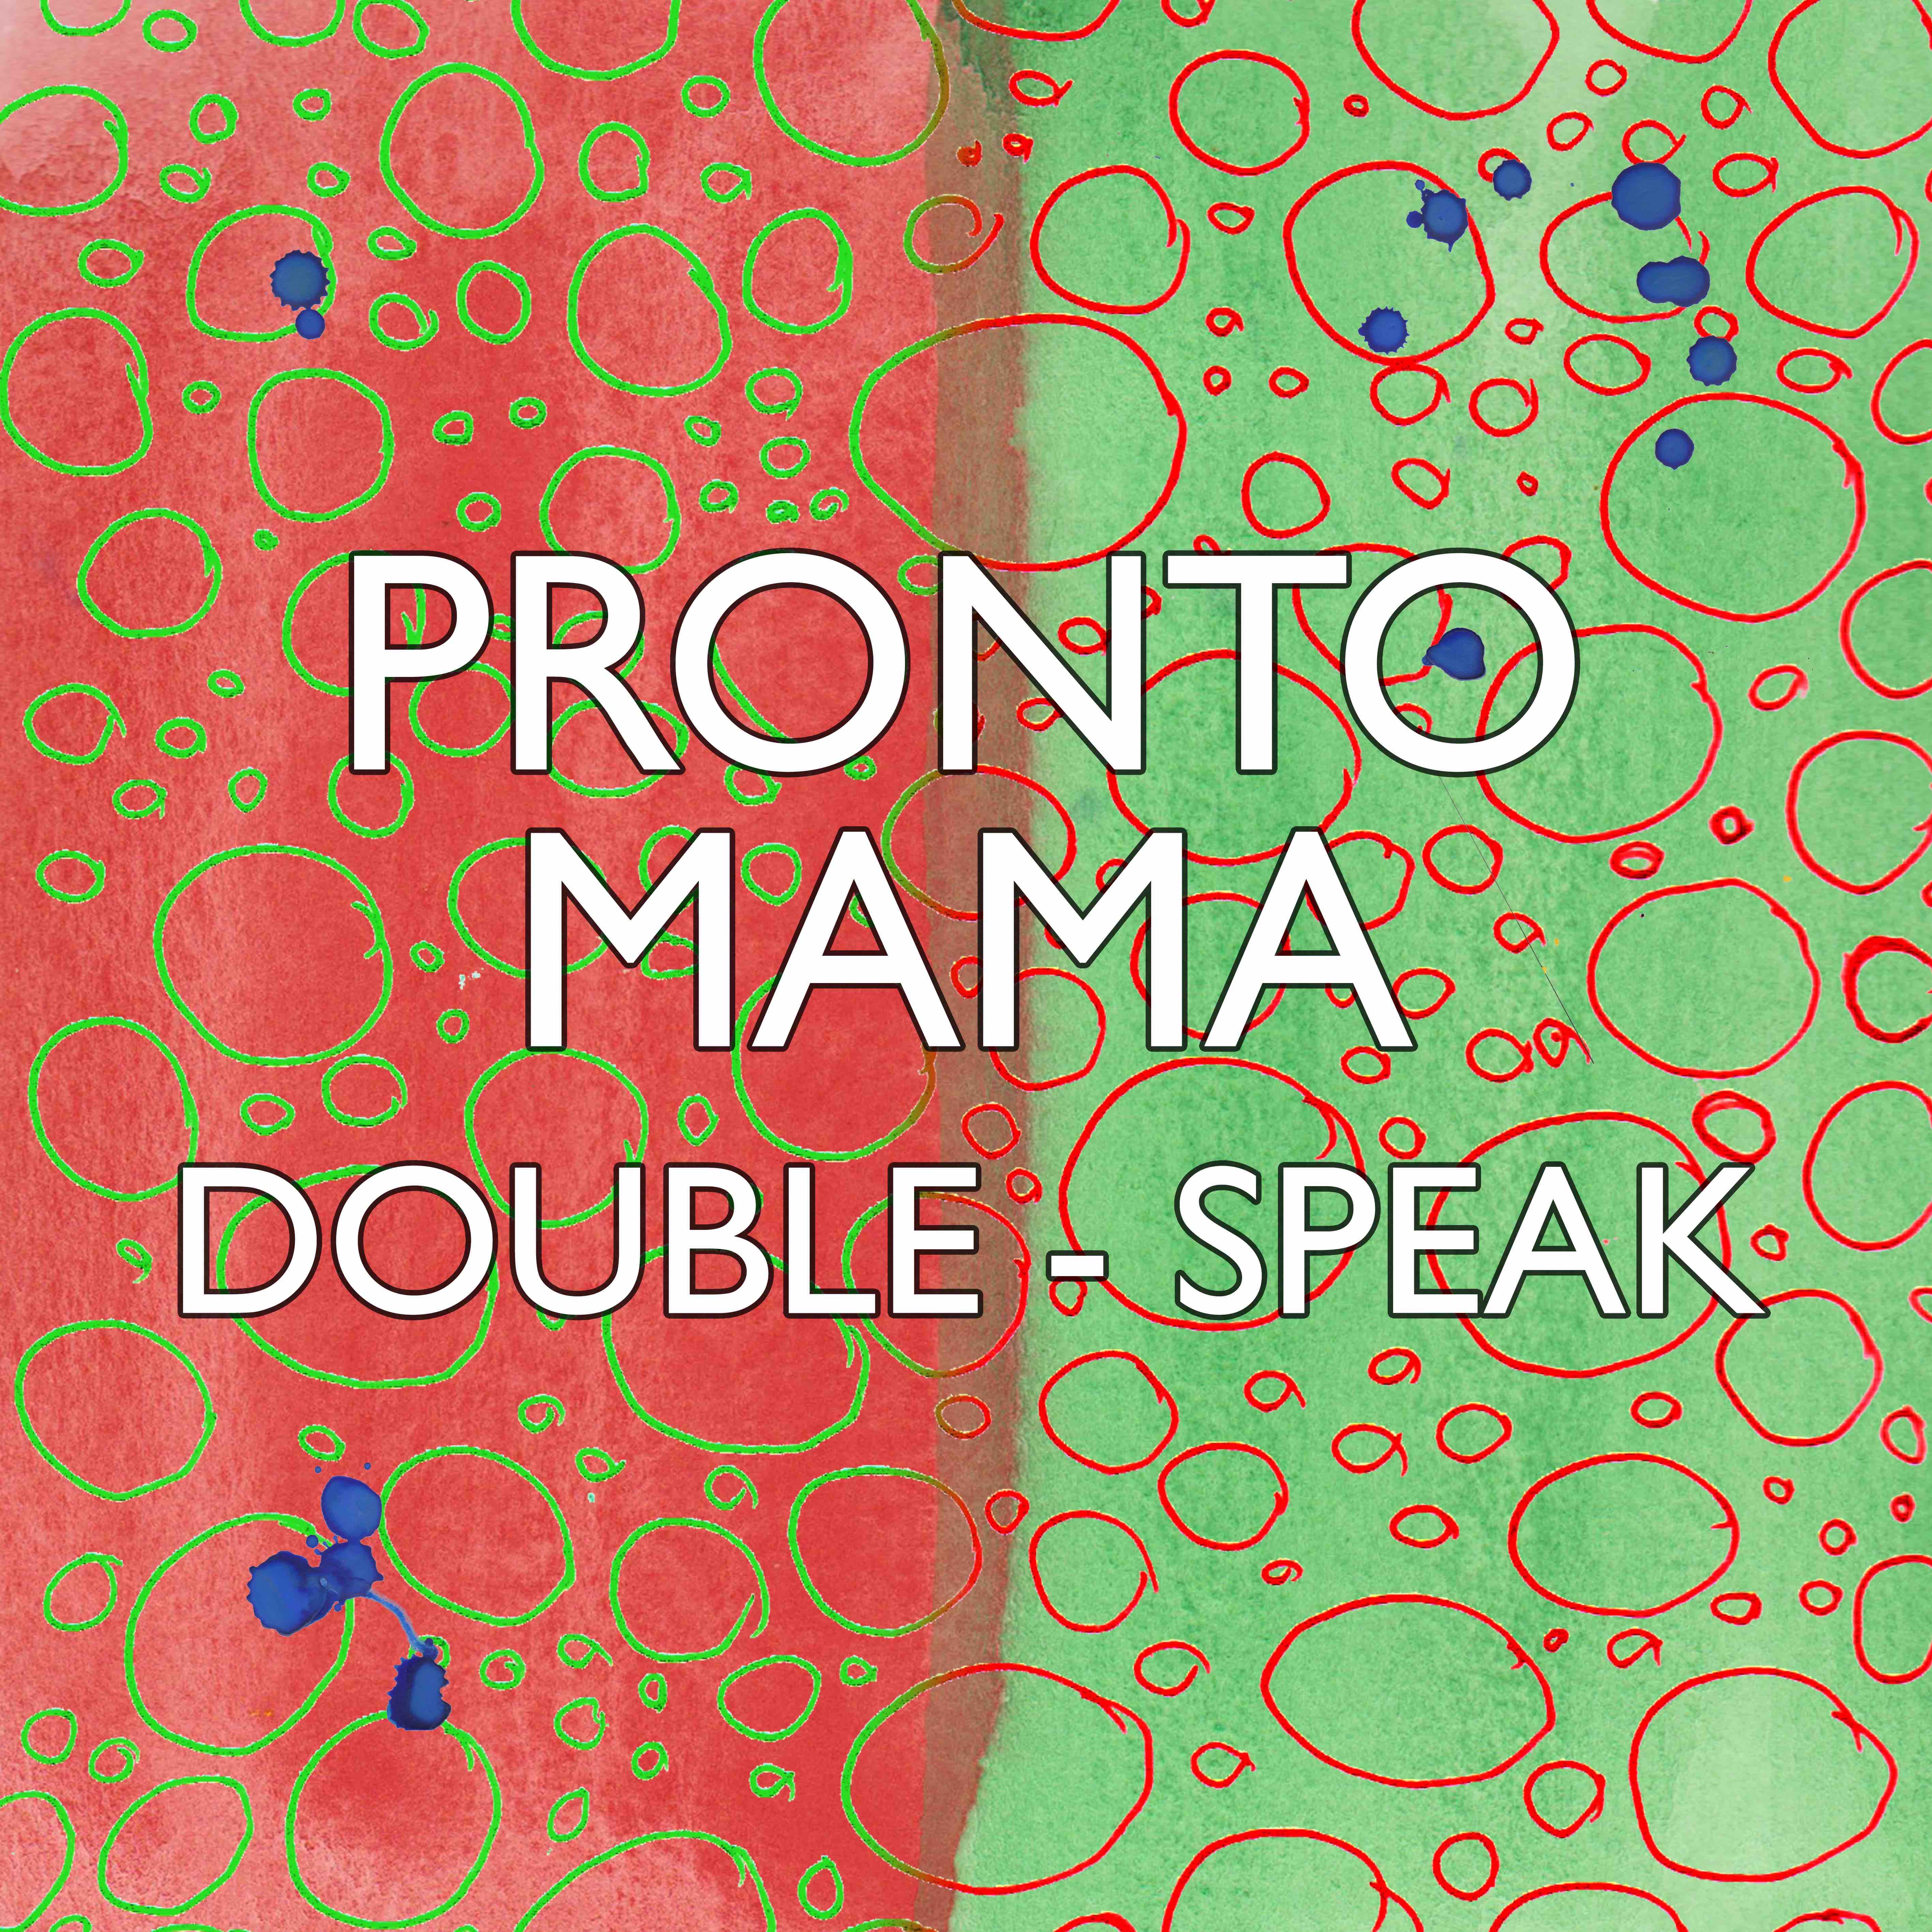 Pronto Mama – “Double-Speak”